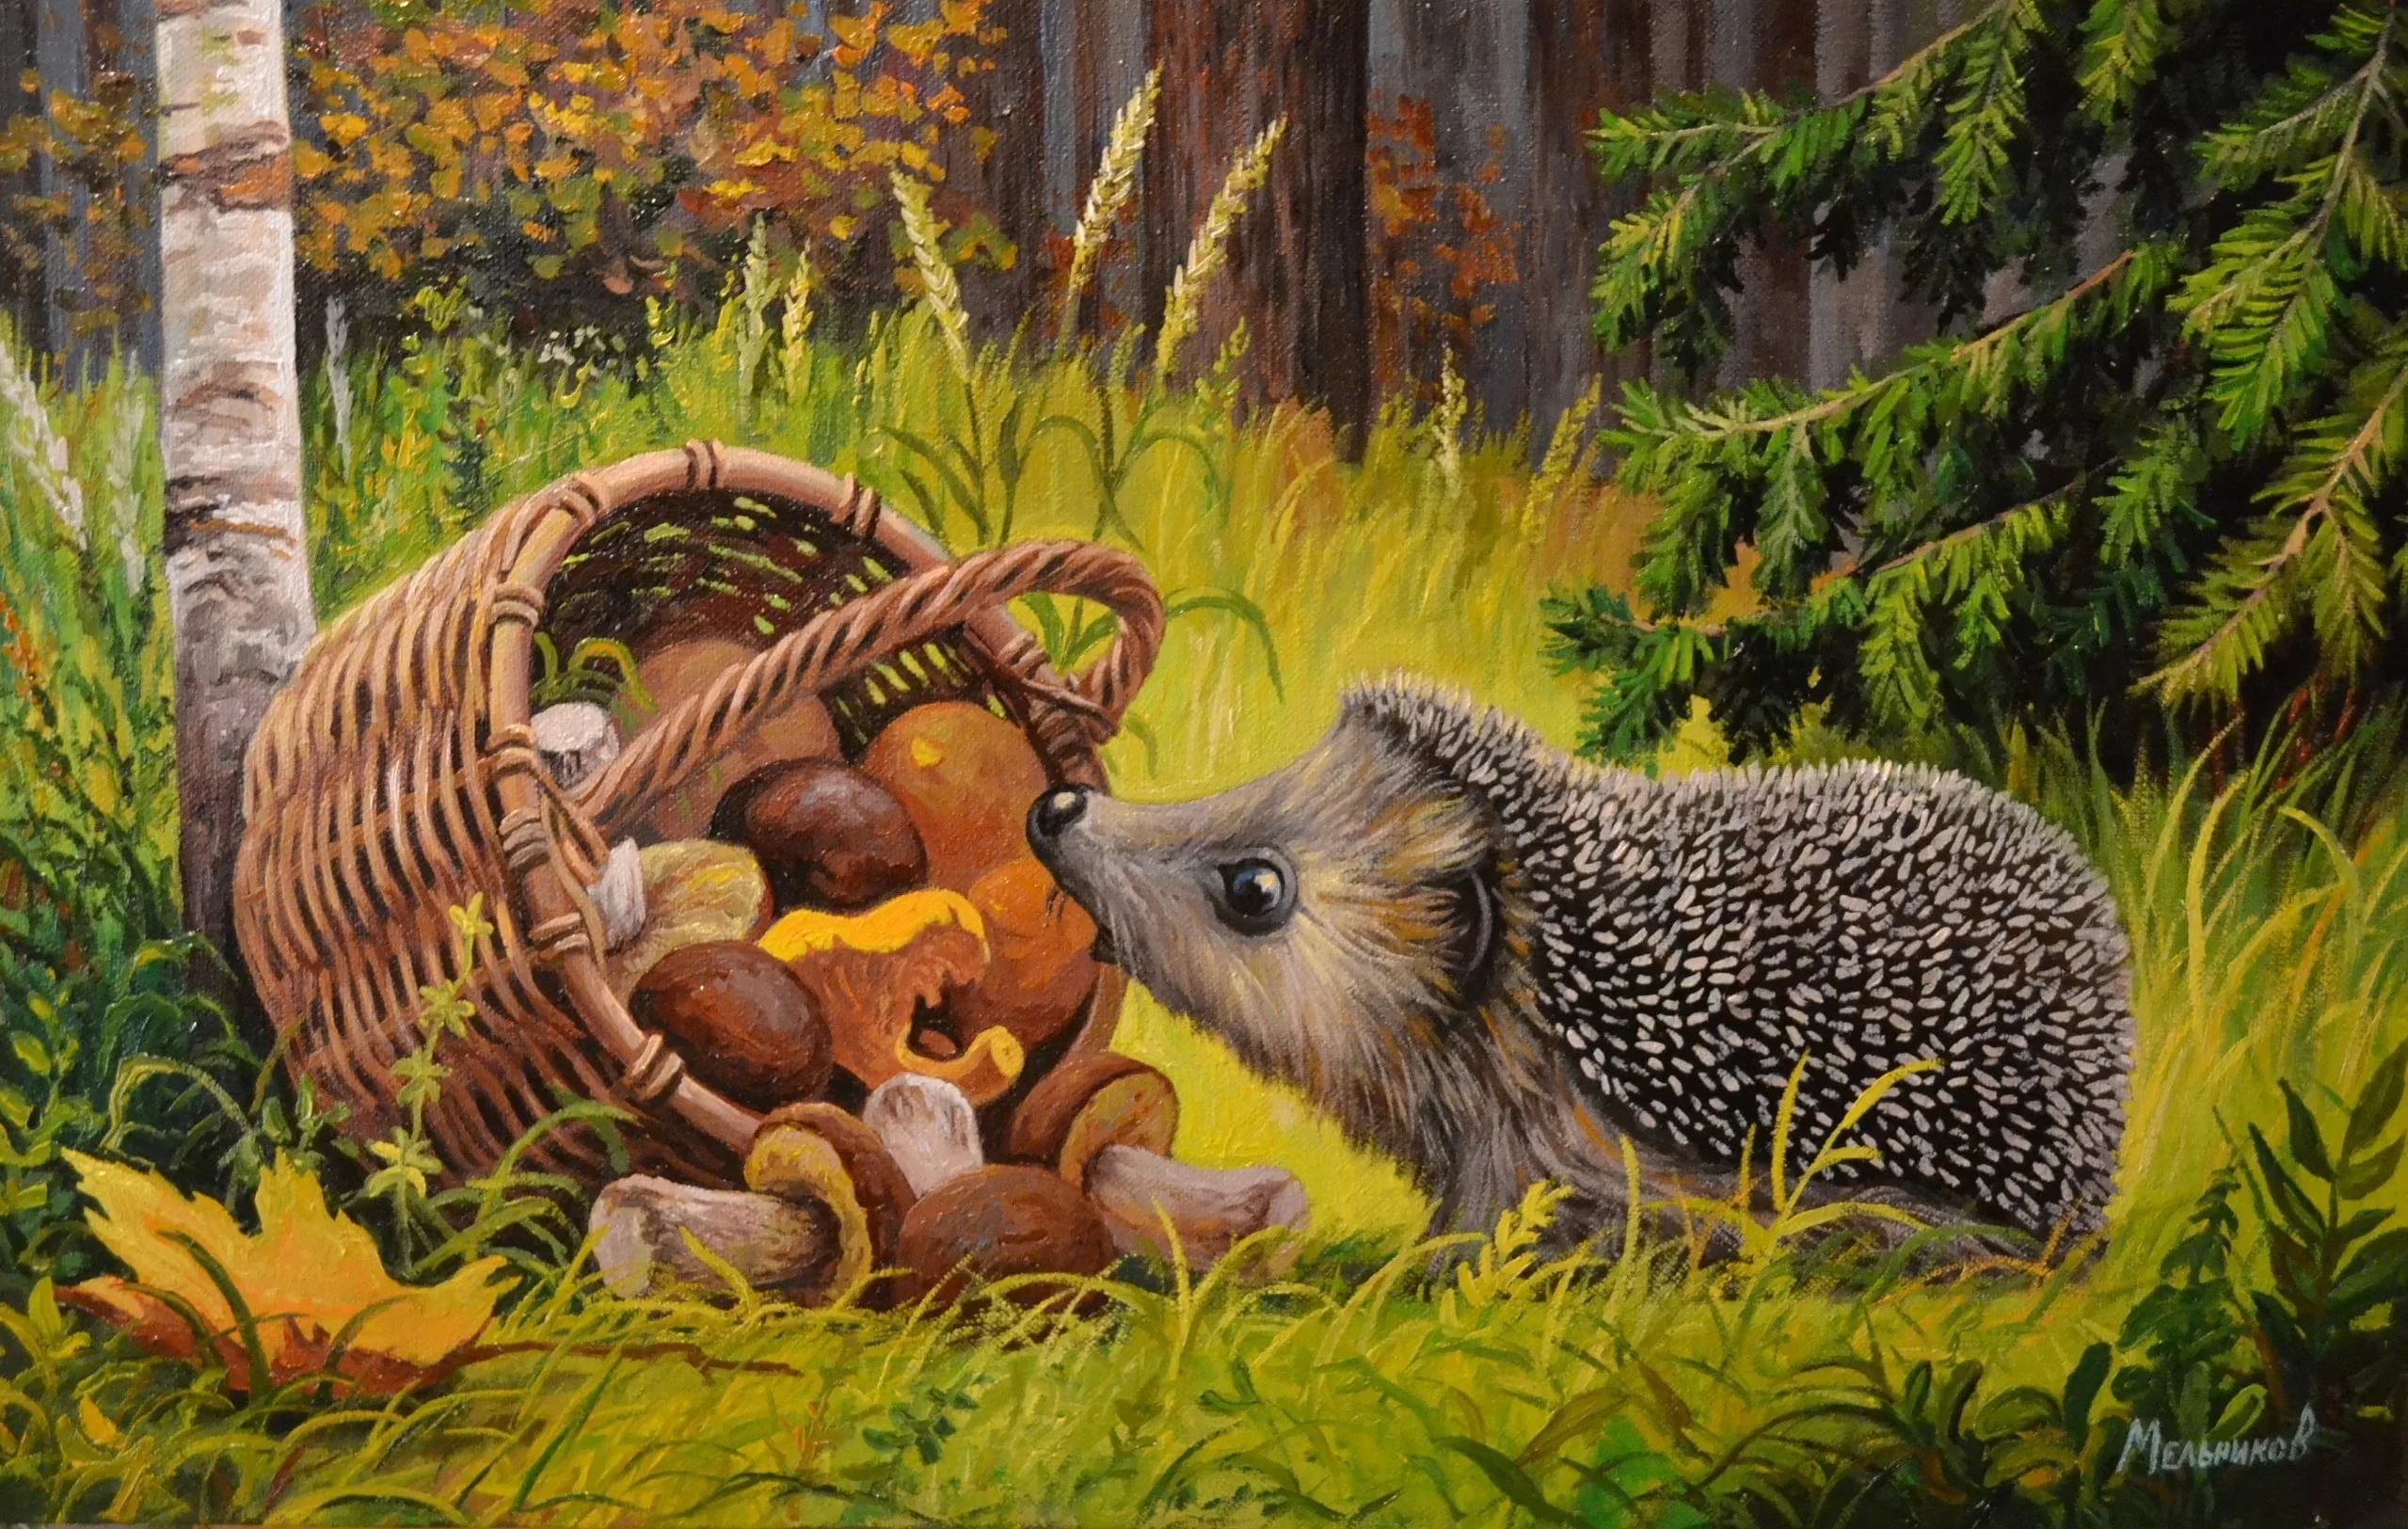 Ежик собирал грибы. Картина ежиха с ежатами. Картина Ежи Меньшиковой. Ежик в лесу.